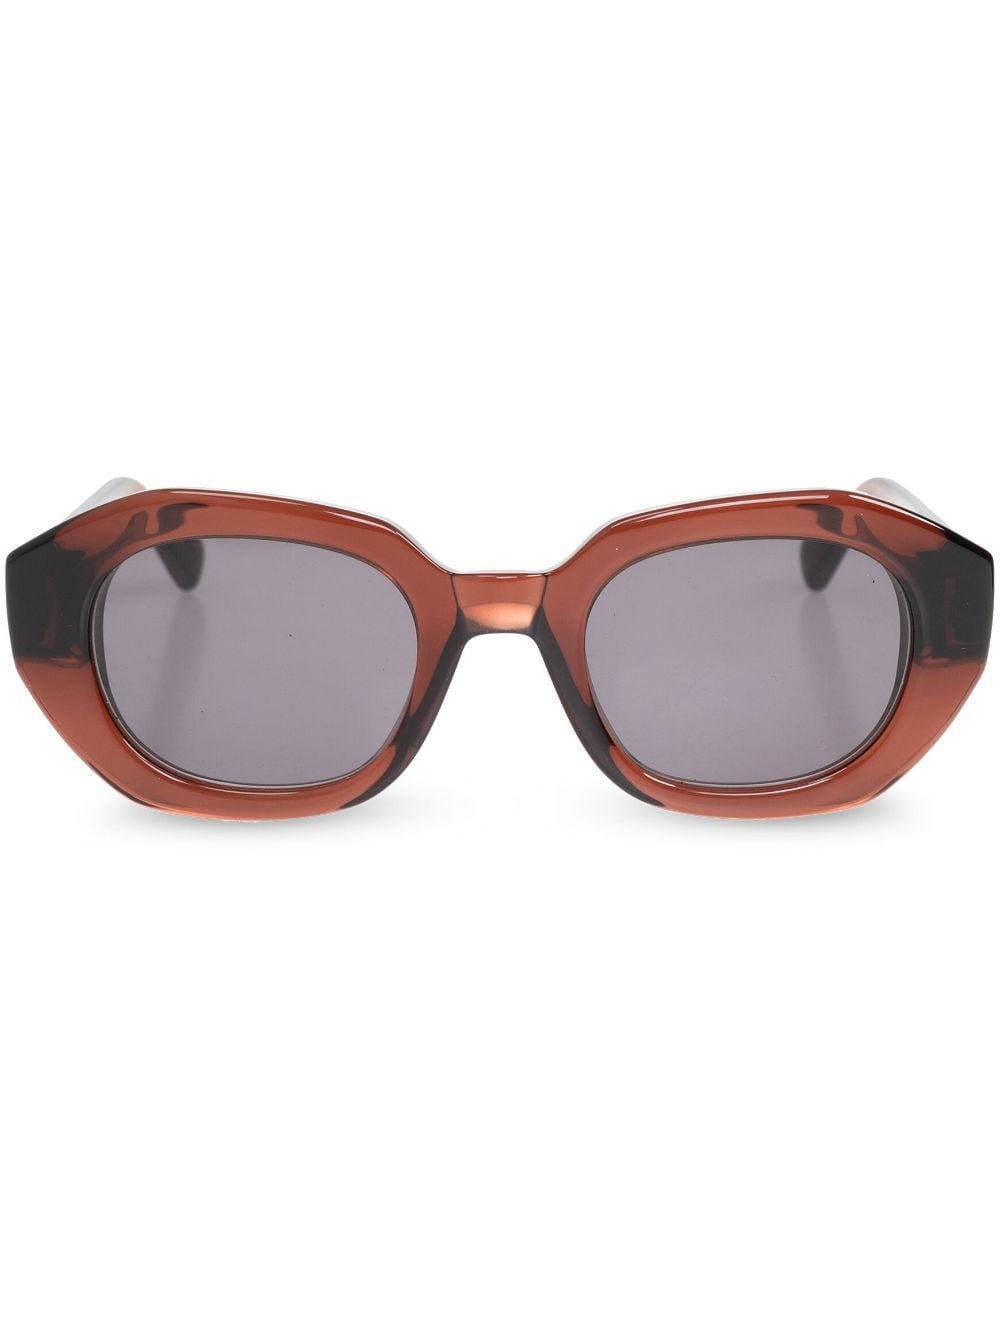 Mykita Satin sunglasses - Brown von Mykita